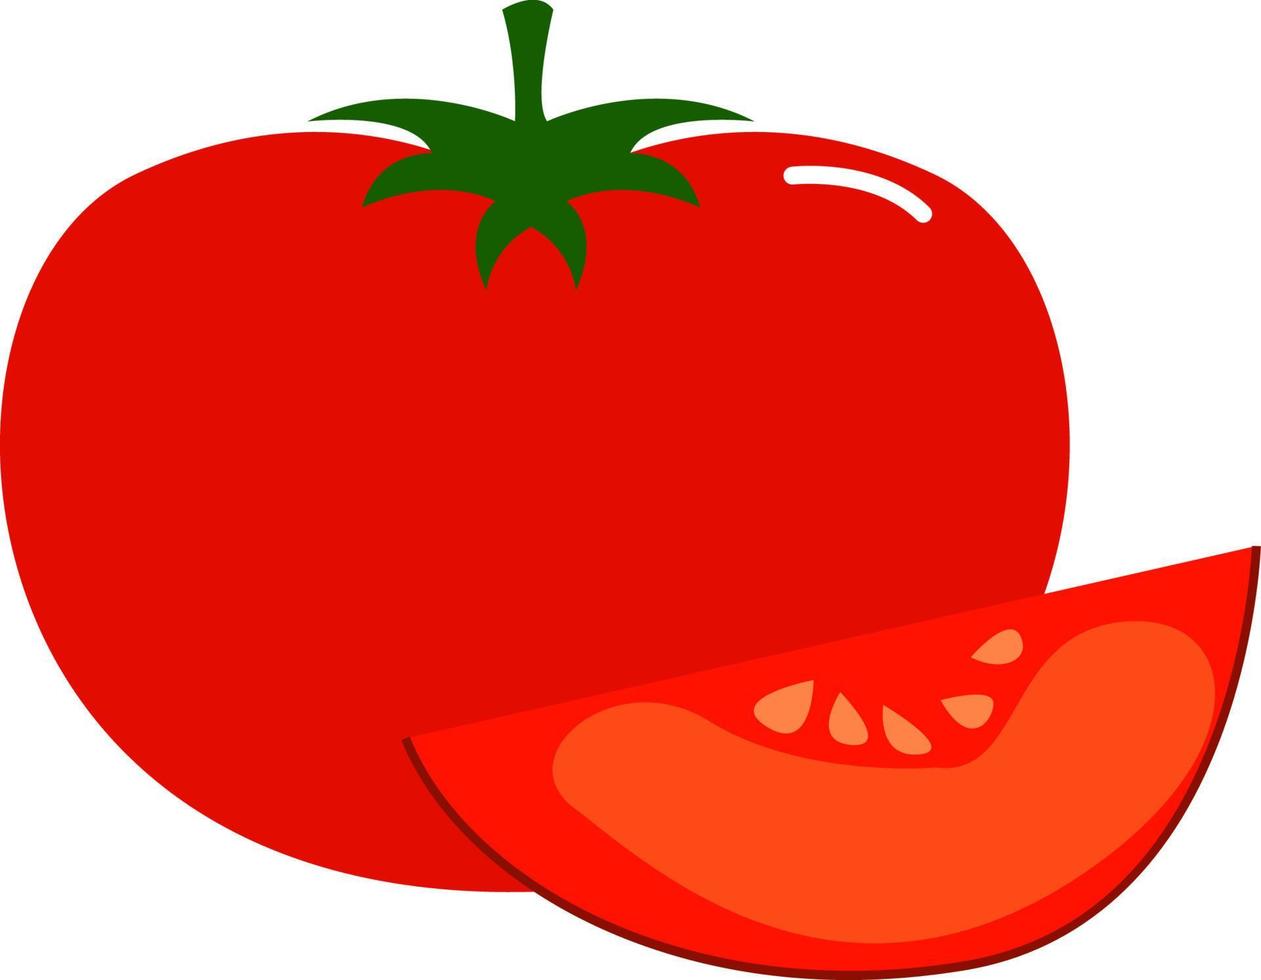 Rebanada de tomates, ilustración, vector sobre fondo blanco.